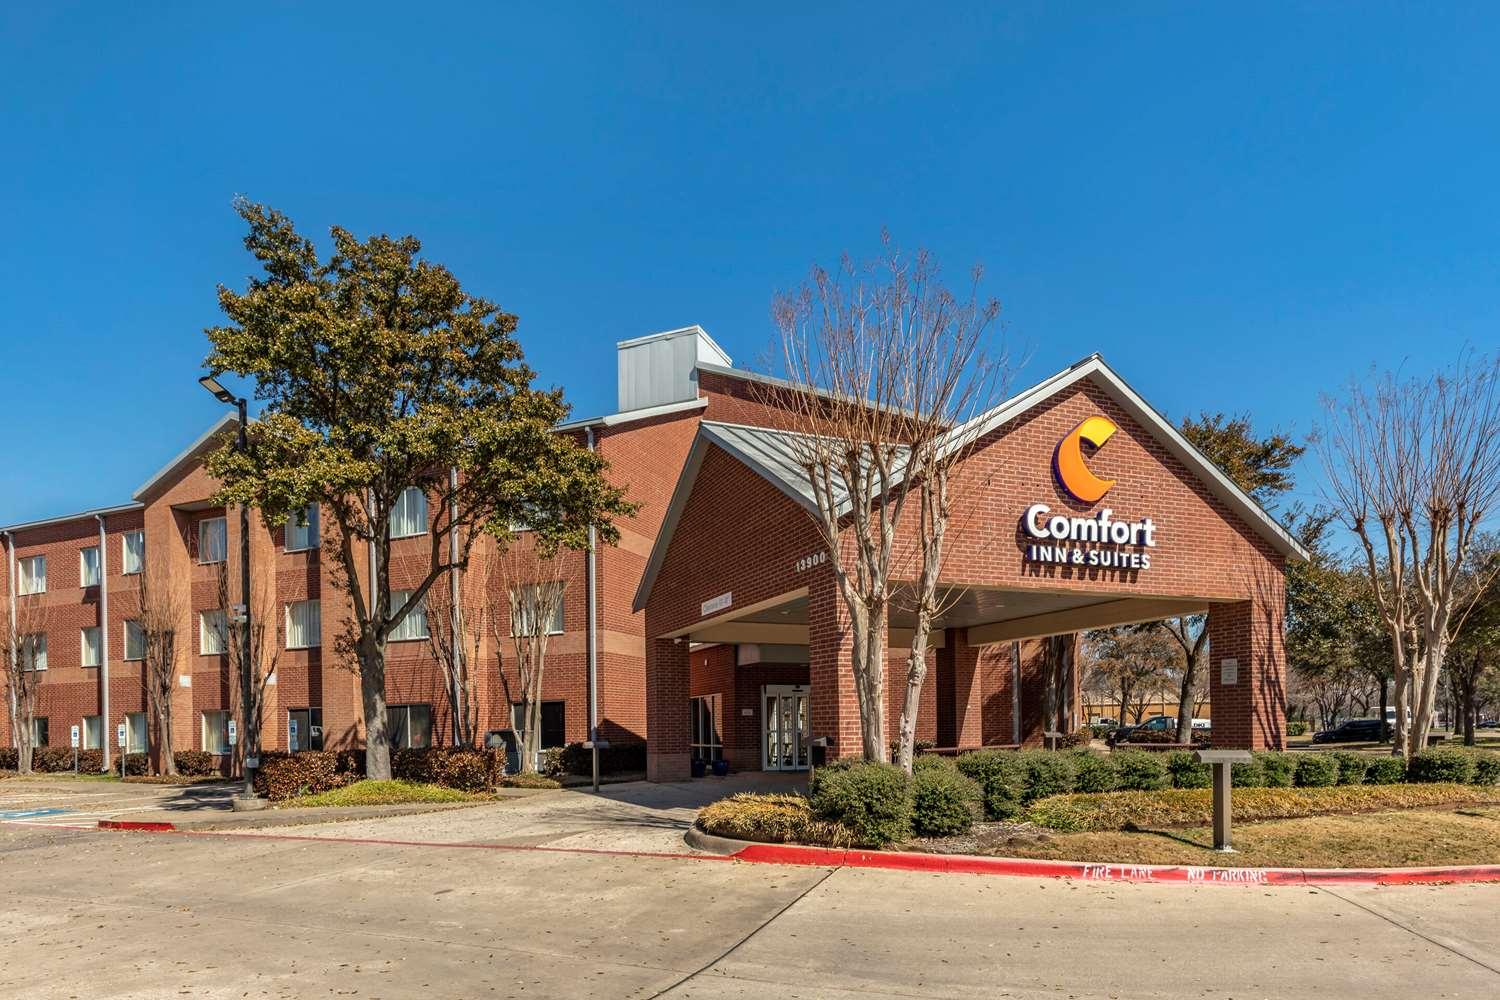 Comfort Inn and Suites Dallas-Addison in Dallas, TX